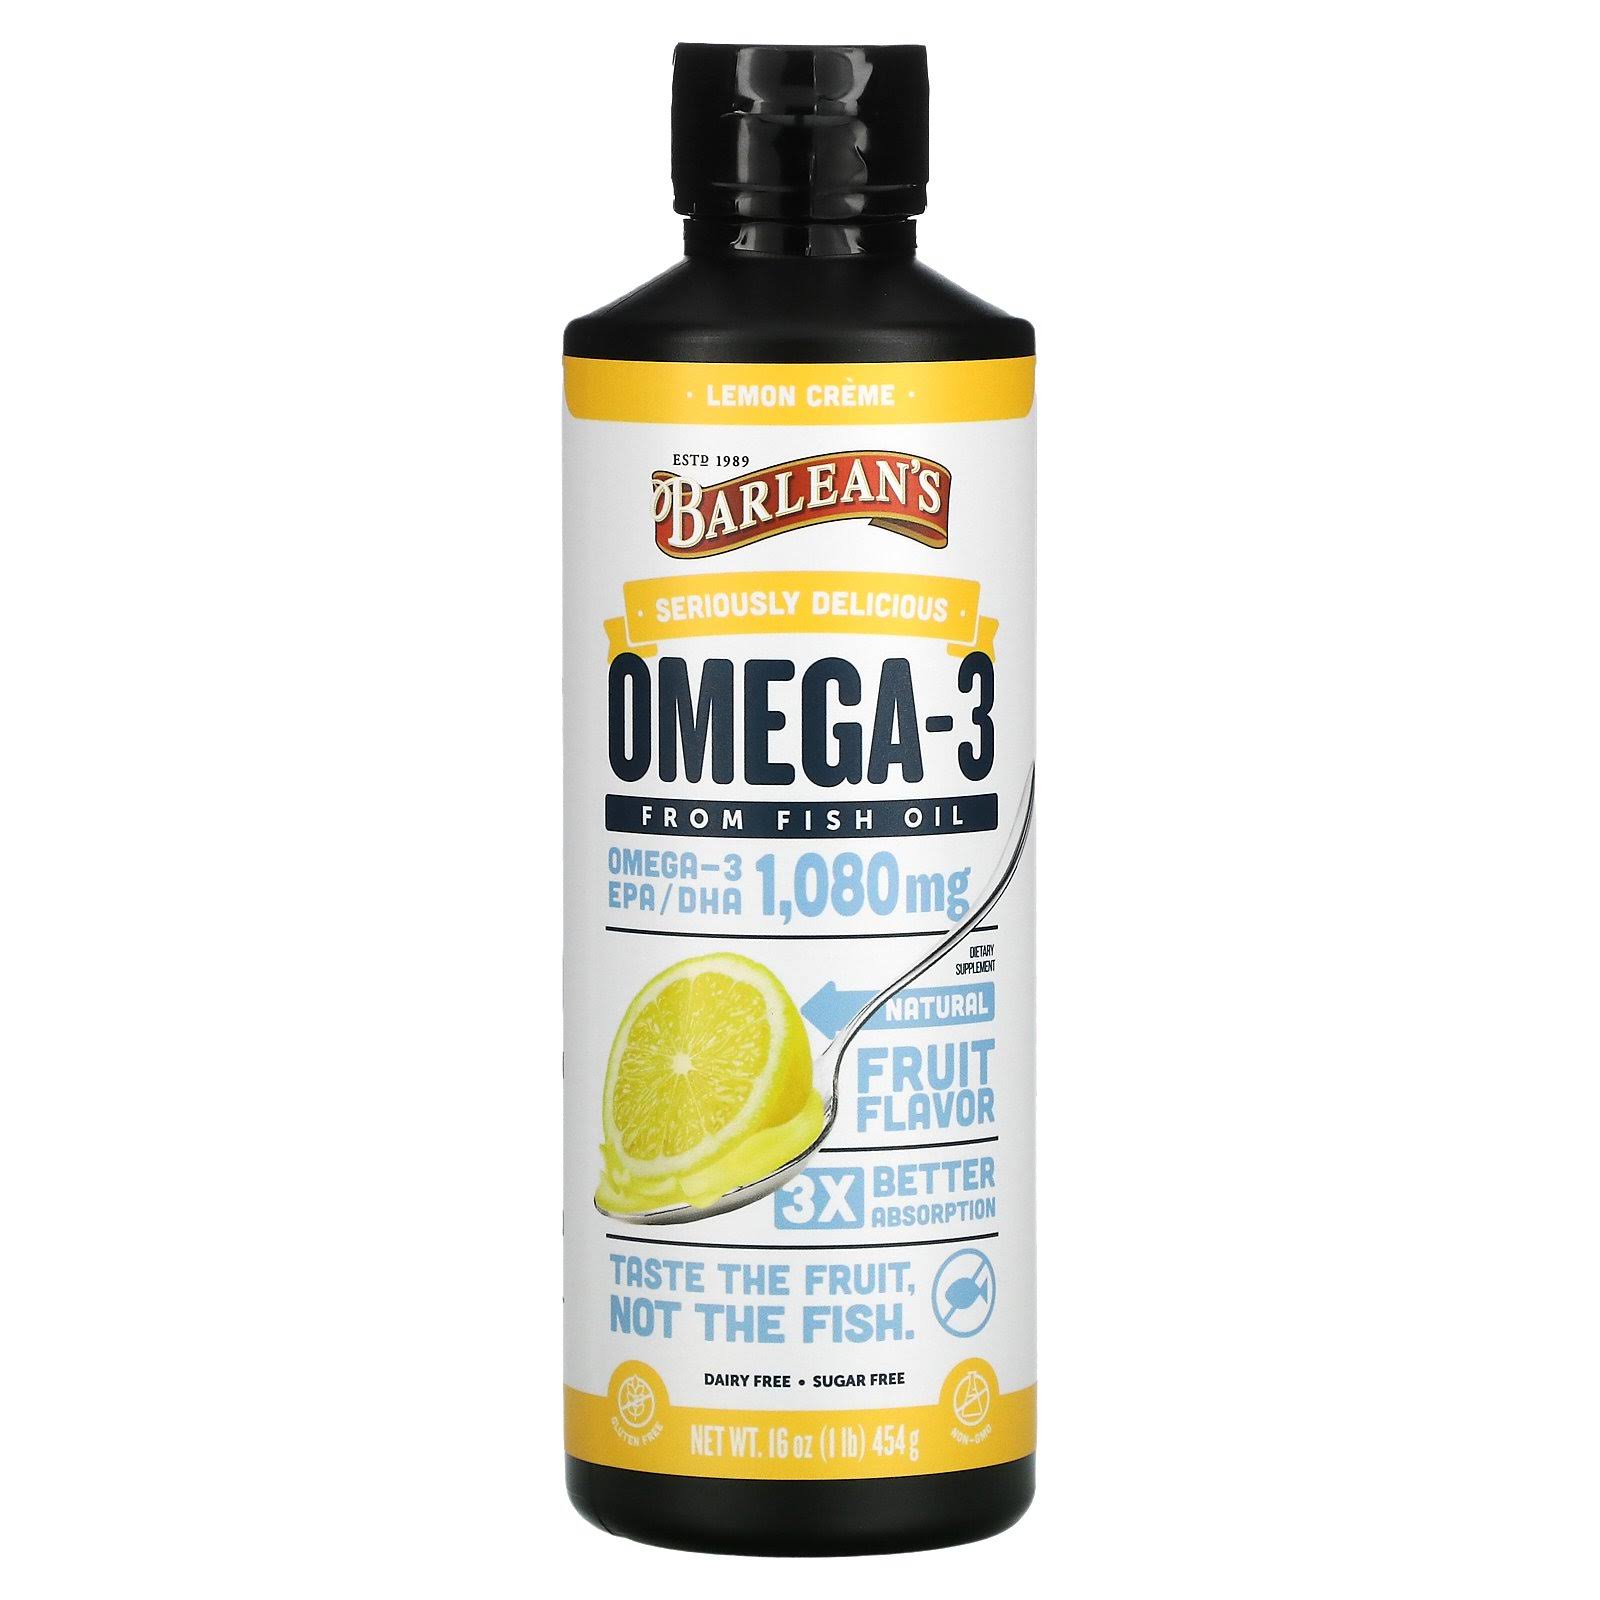 Barlean's Omega Swirl Fish Oil - Lemon Zest, 16oz